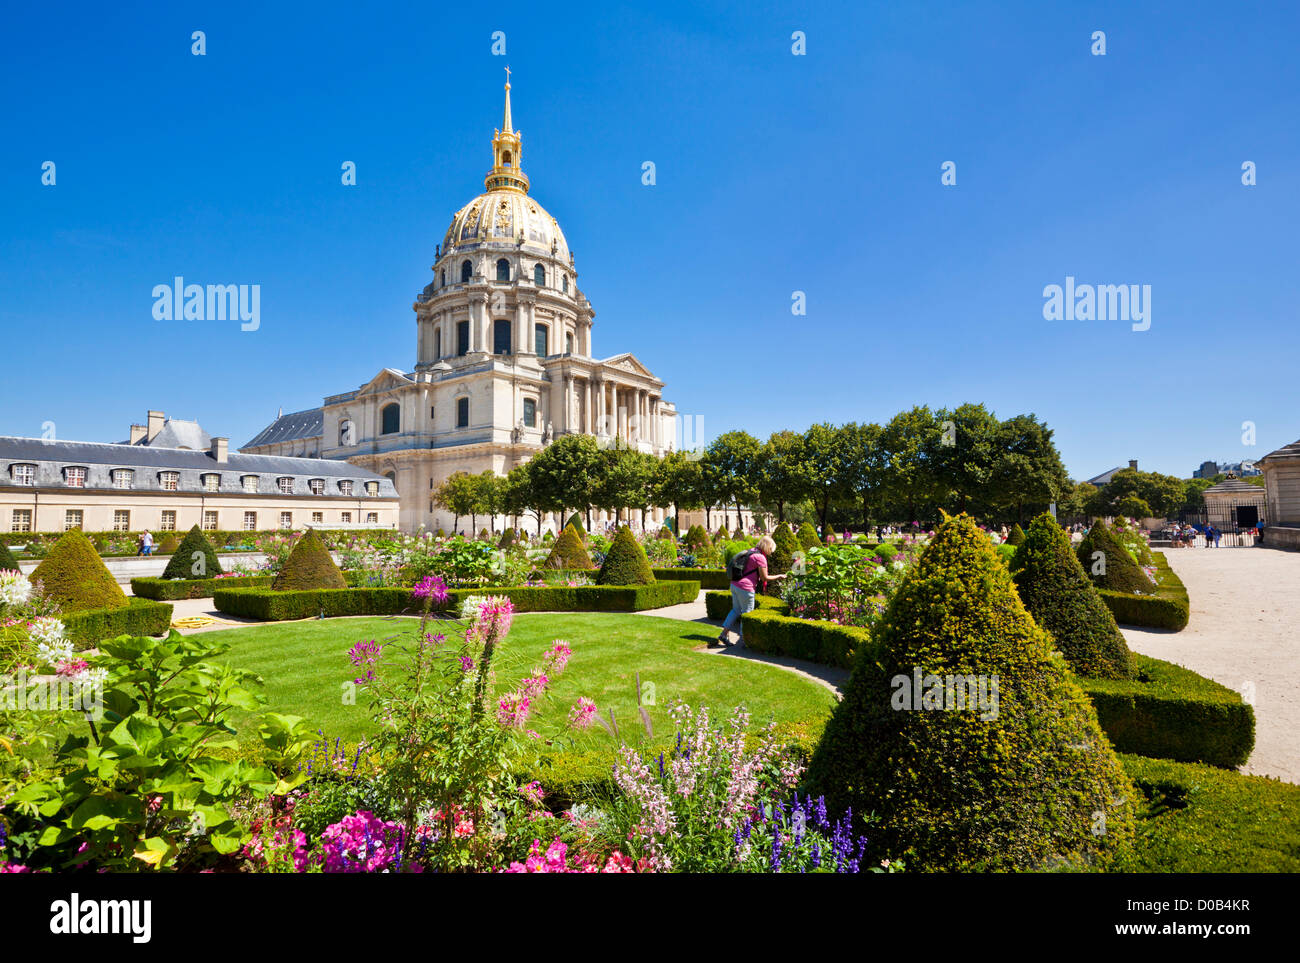 À la personne à les fleurs dans les jardins de l'Église du Dôme des Invalides tombeau de Napoléon Paris France Europe de l'UE Banque D'Images